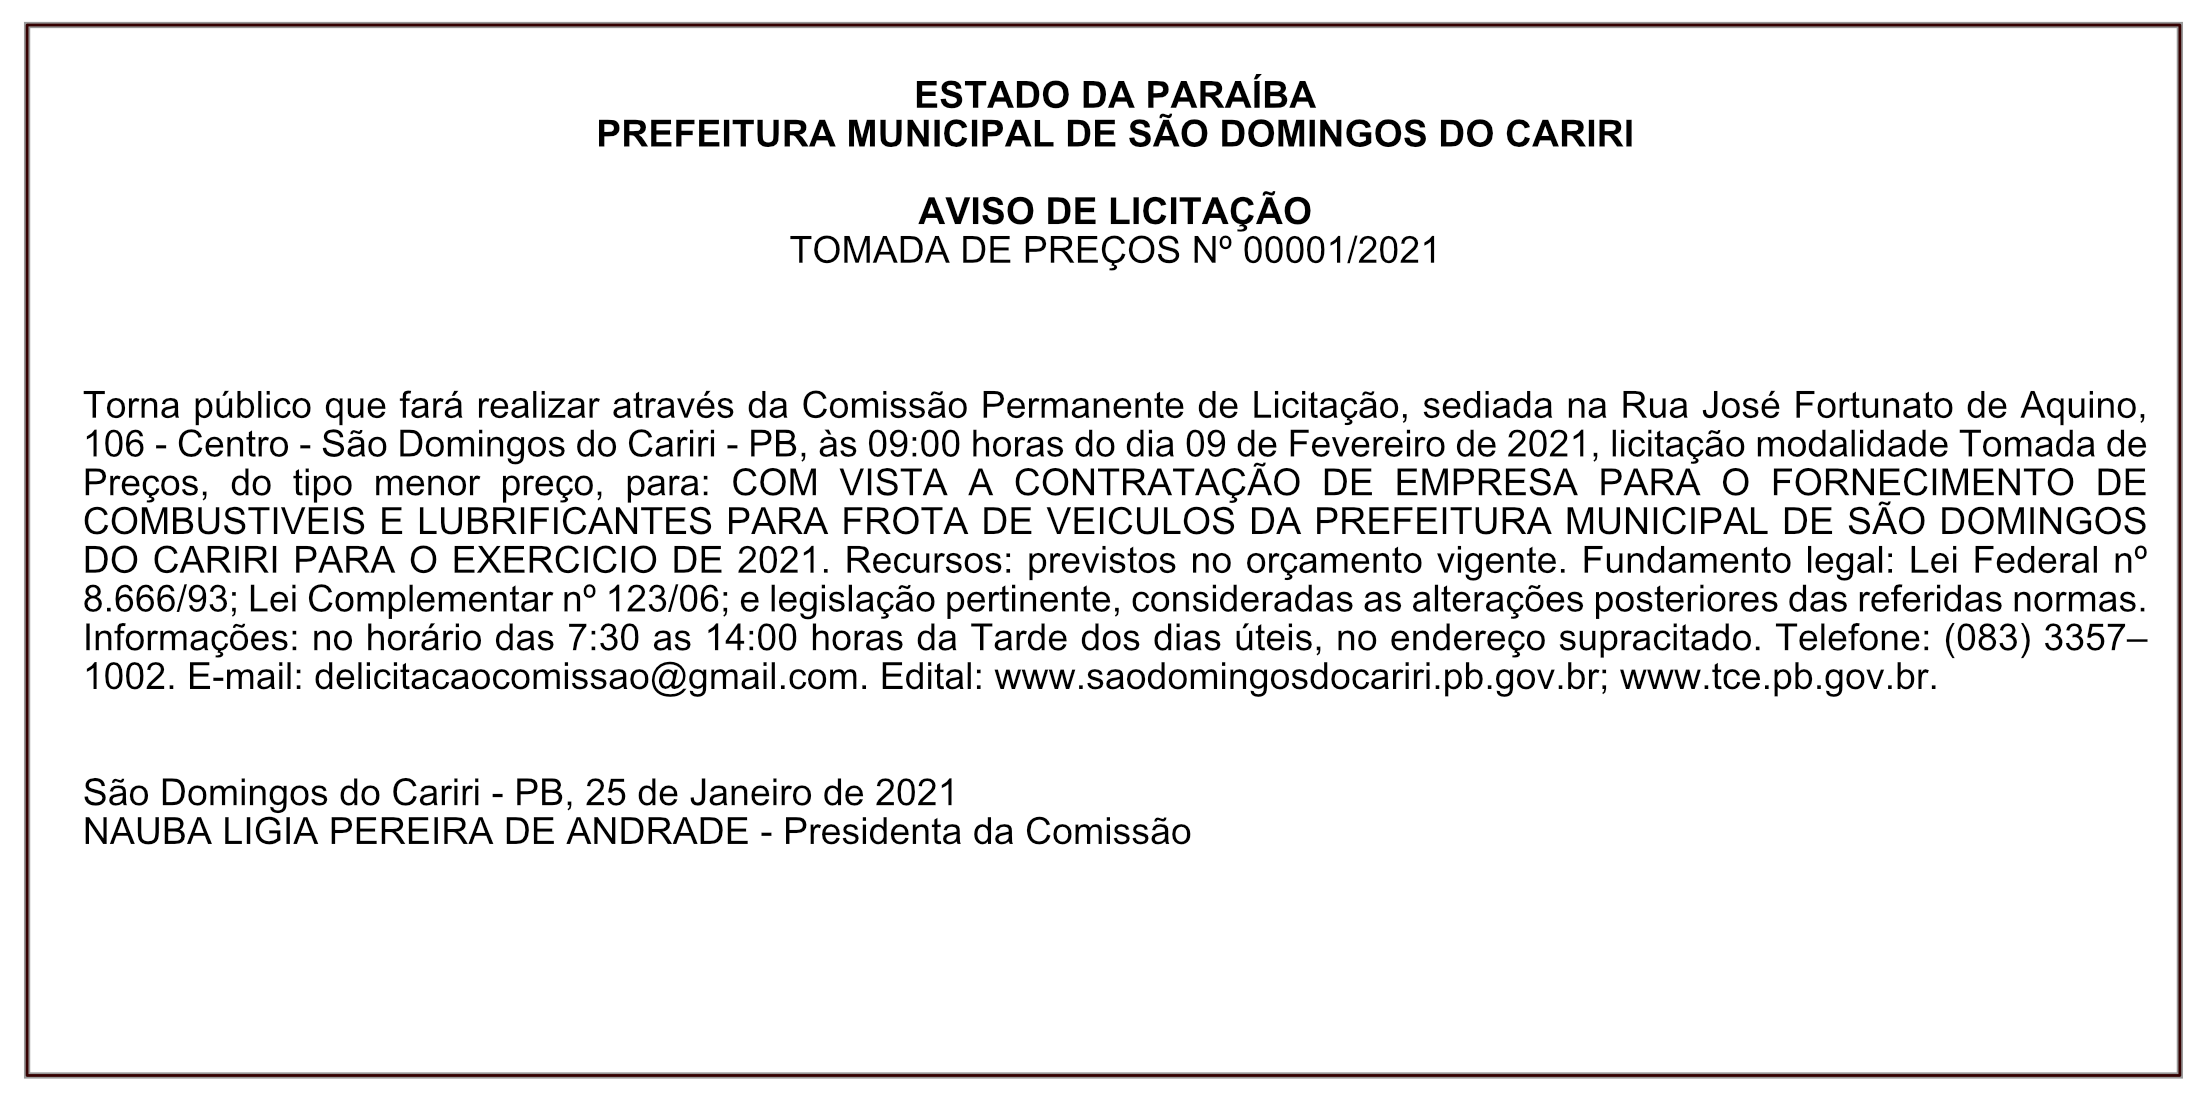 PREFEITURA MUNICIPAL DE SÃO DOMINGOS DO CARIRI – AVISO DE LICITAÇÃO – TOMADA DE PREÇOS Nº 00001/2021